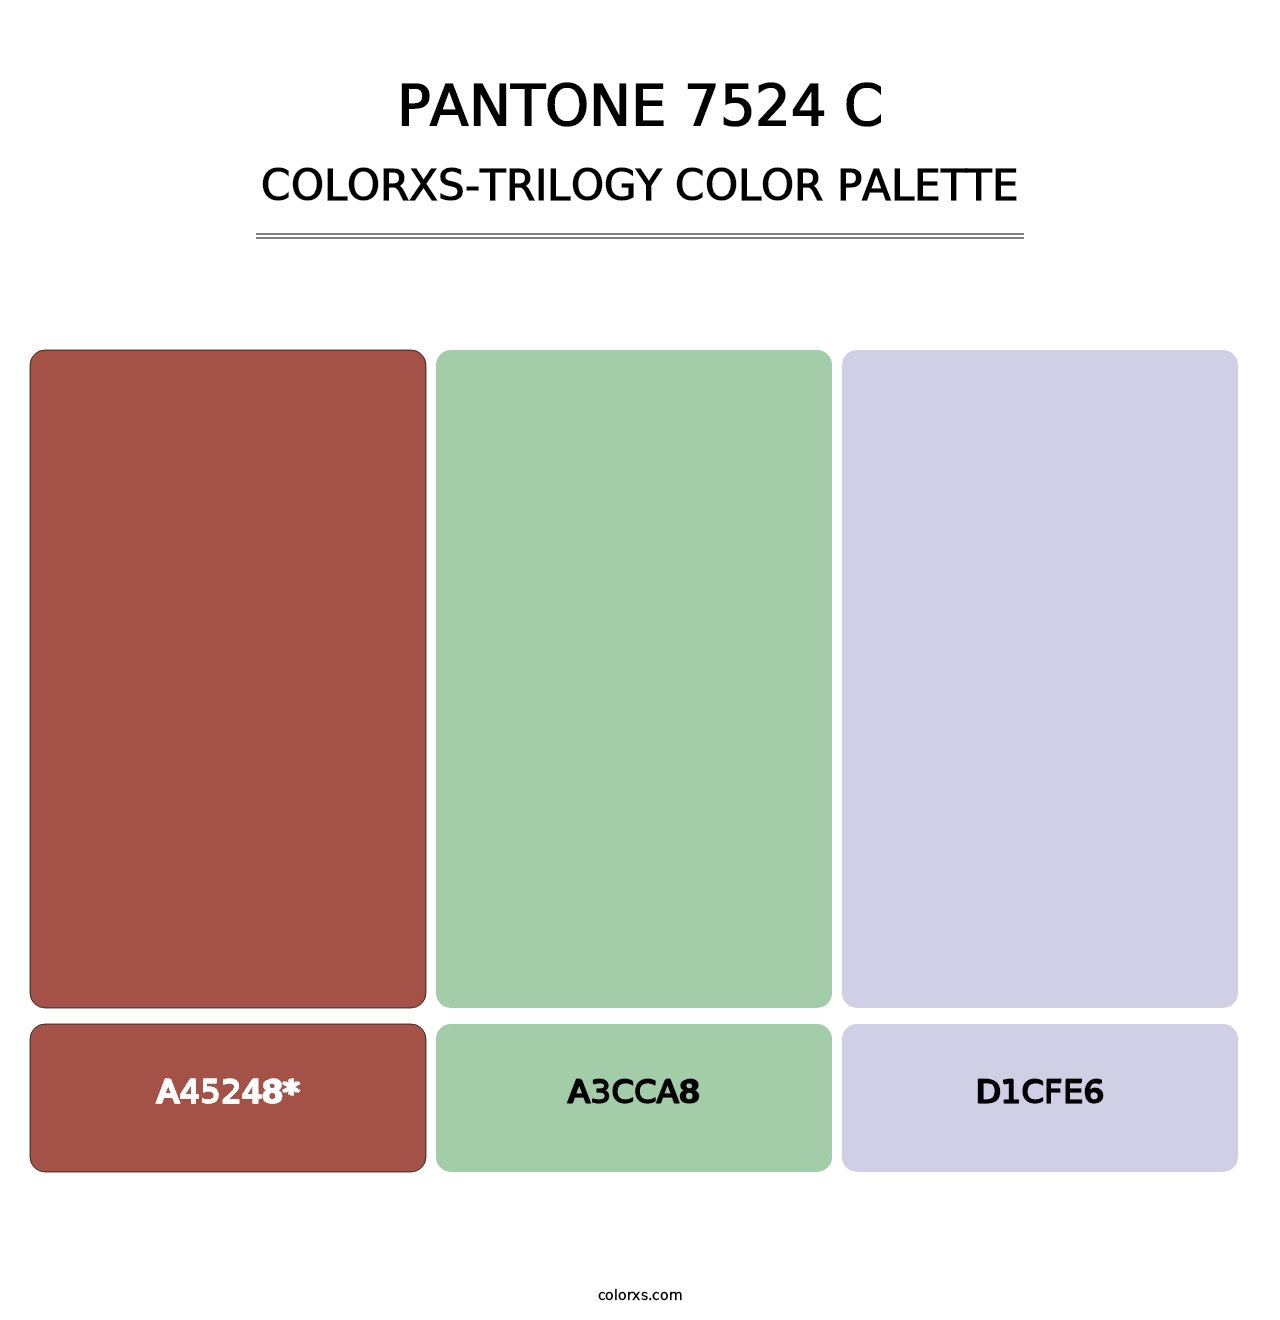 PANTONE 7524 C - Colorxs Trilogy Palette